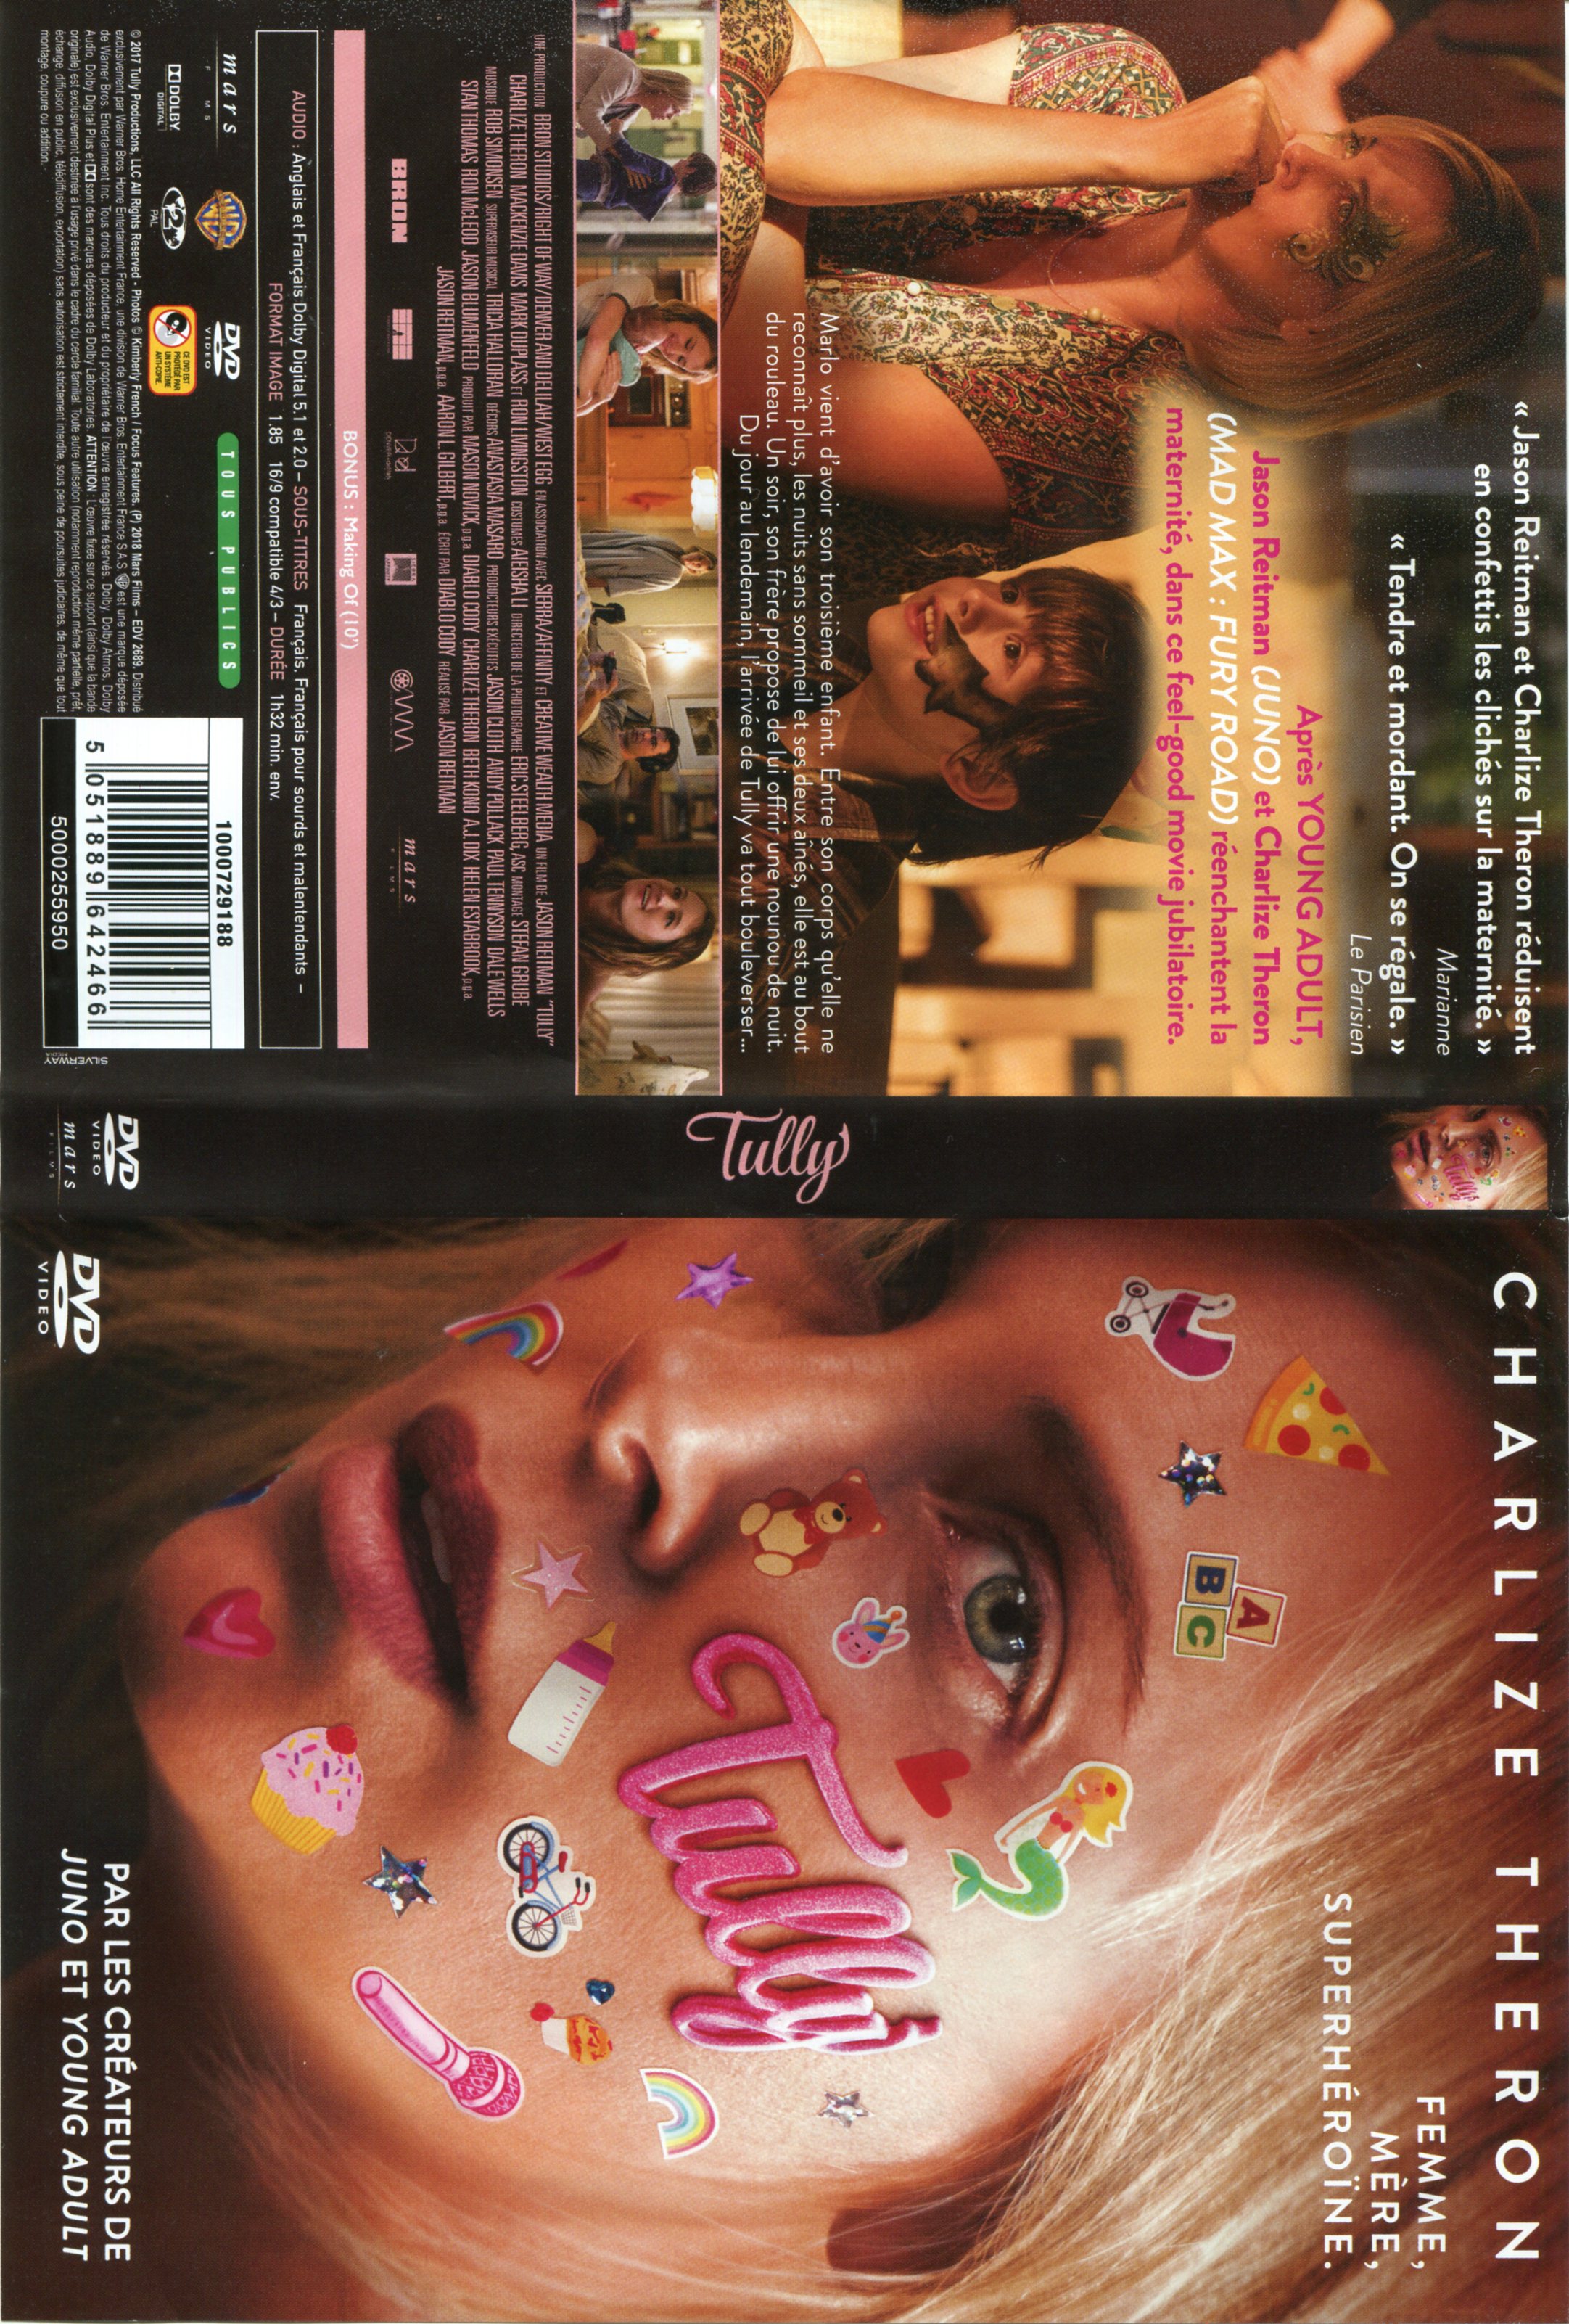 Jaquette DVD de Tully Cinéma Passion